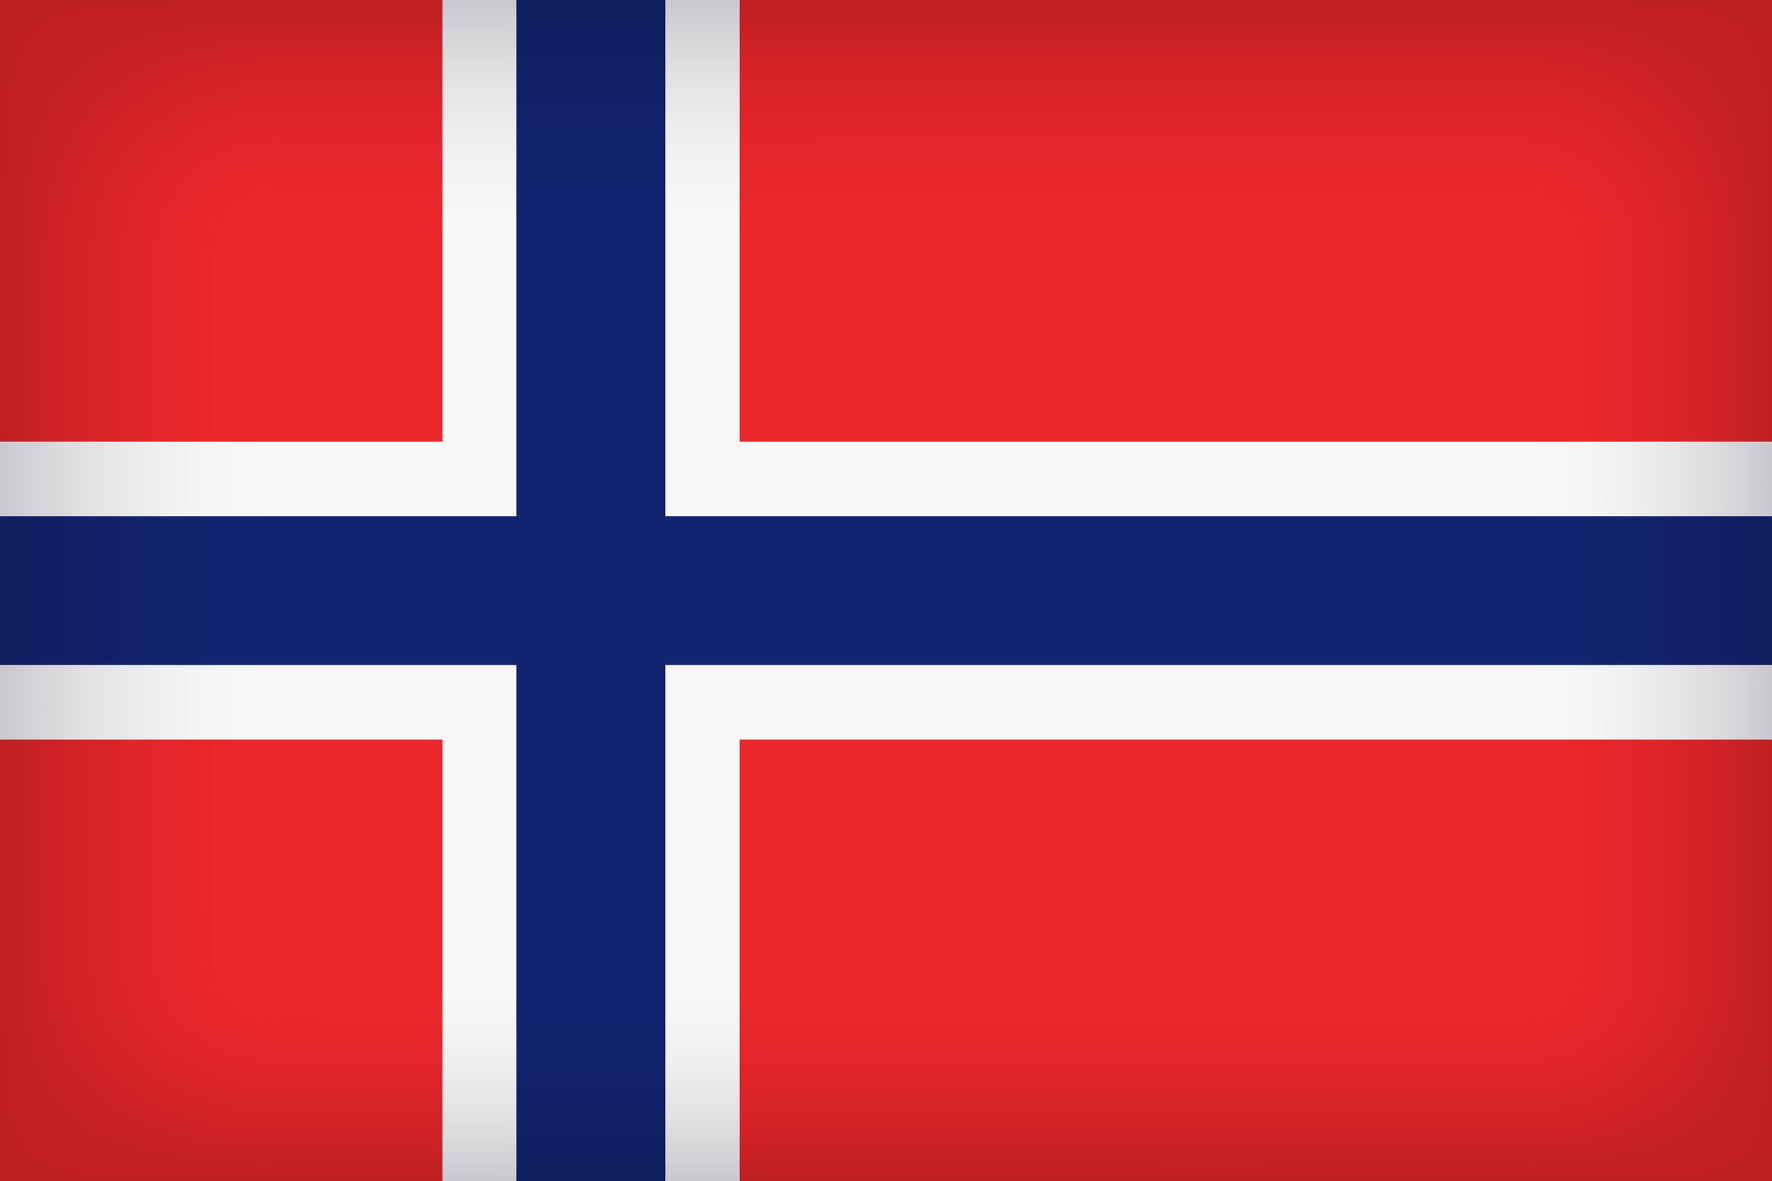 Panel badania rynku w Norwegii